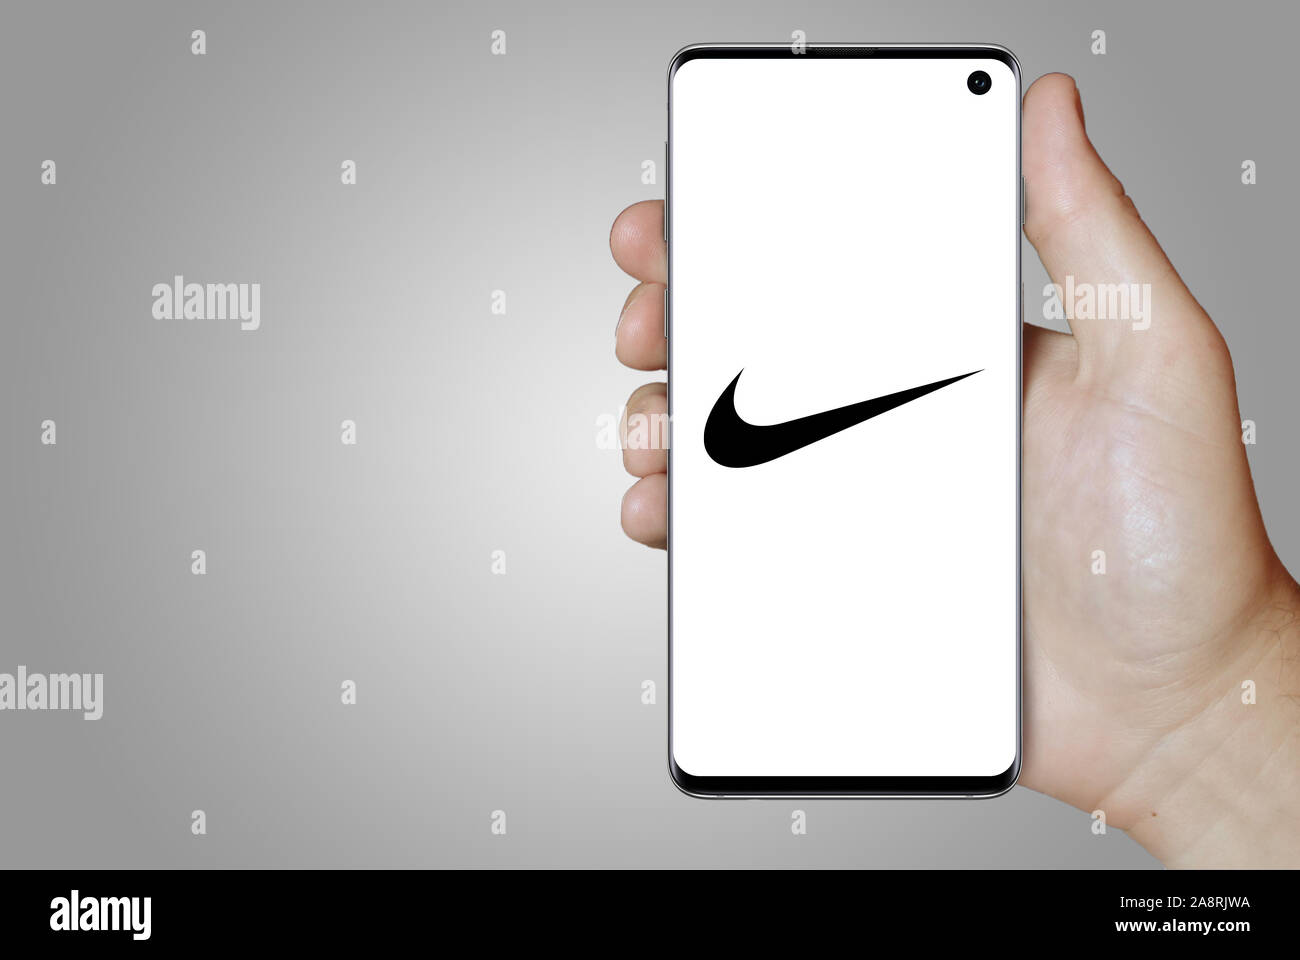 Logo de l'entreprise publique affiche Nike sur un smartphone. Fond gris. Credit : PIXDUCE Banque D'Images